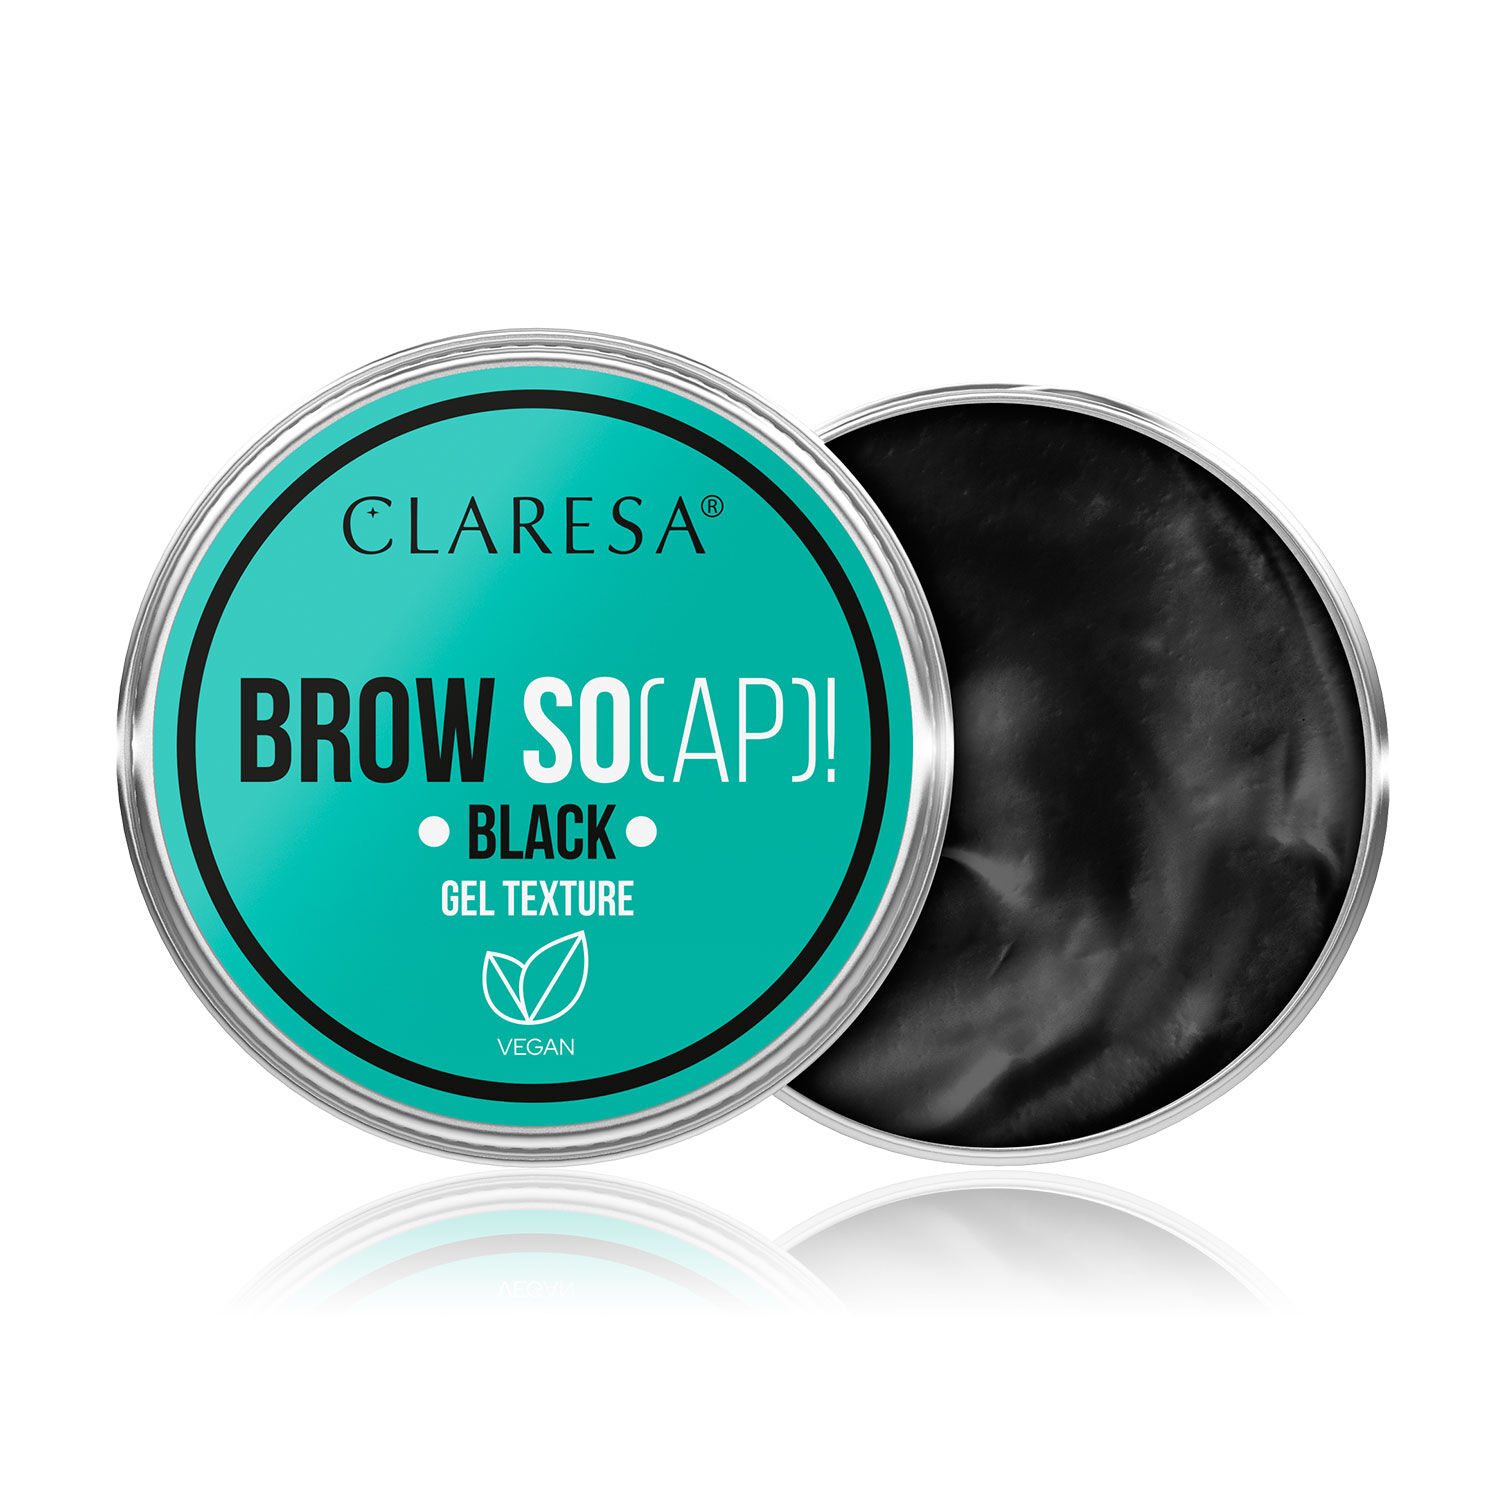 Мыло для укладки бровей черное Claresa Brow So(Ap)!, 30 мл мыло для укладки бровей brow styling cream